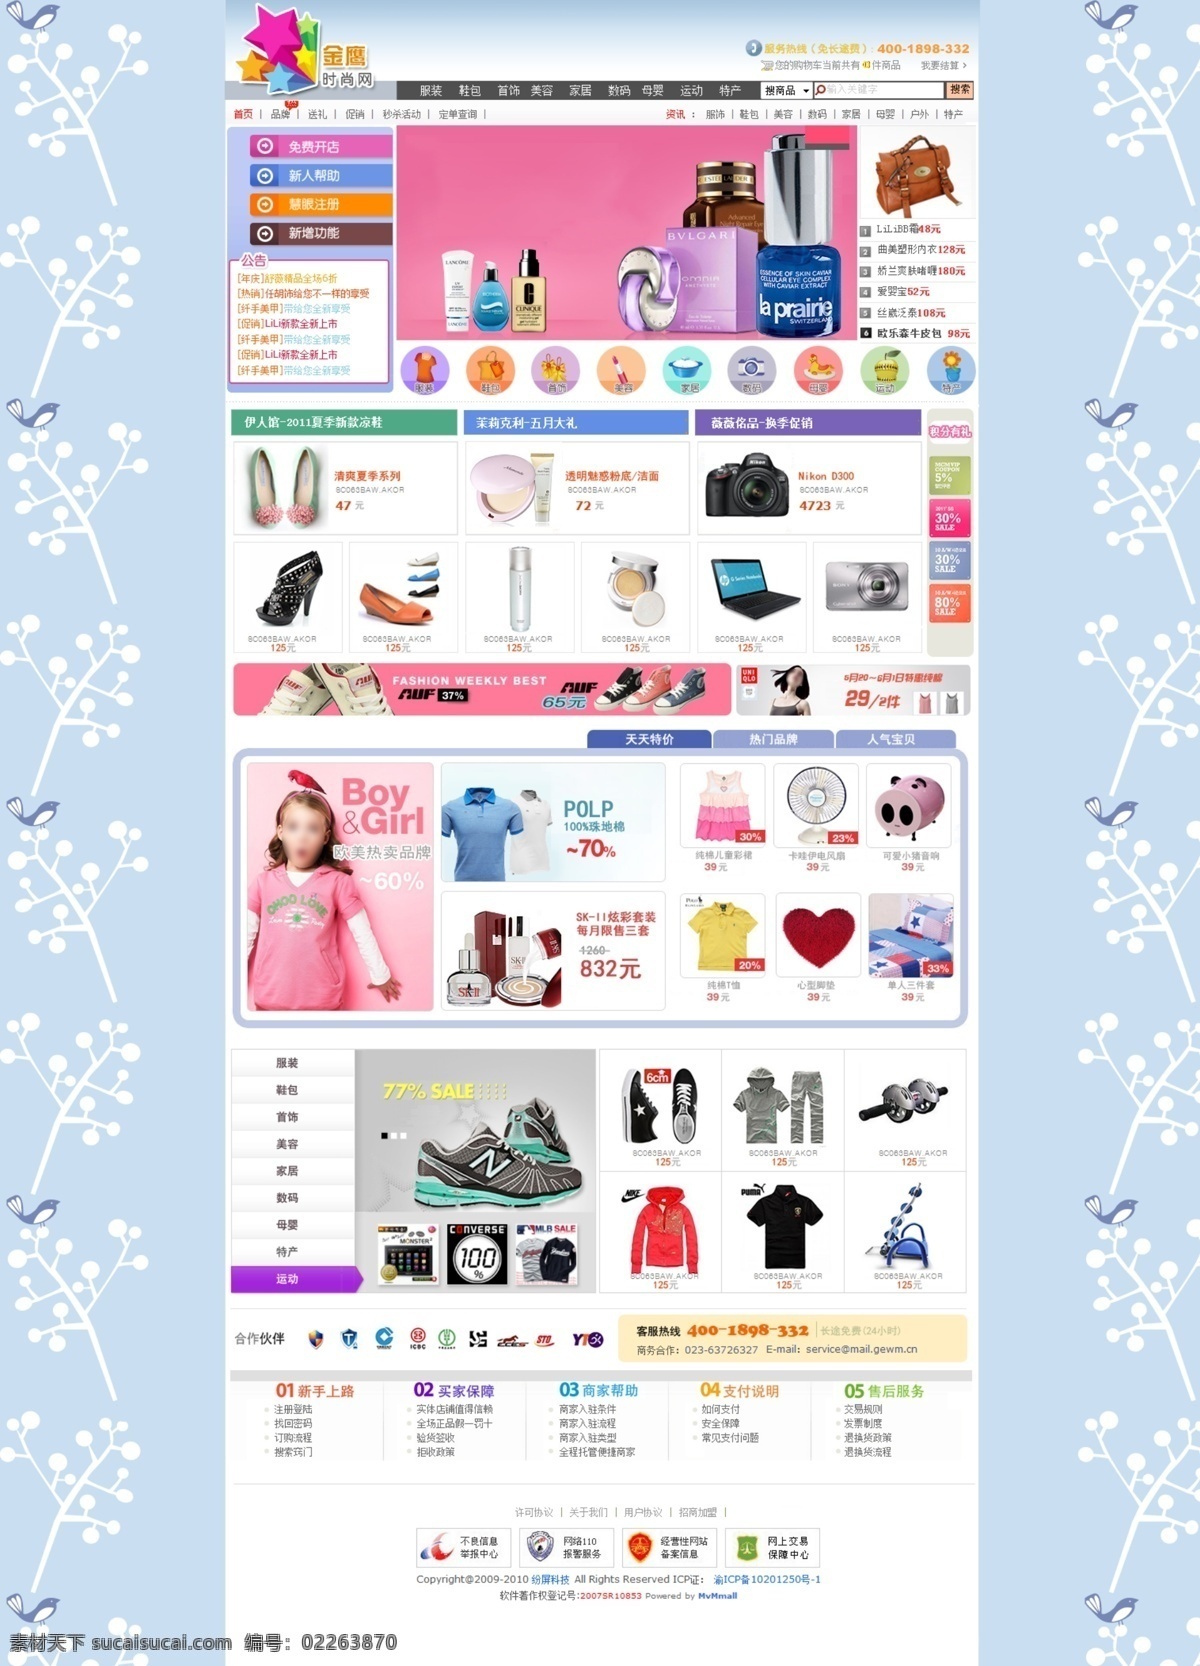 购物网站模板 购物网站 网上商城 蓝色 服饰 网站模板 中文模版 网页模板 源文件